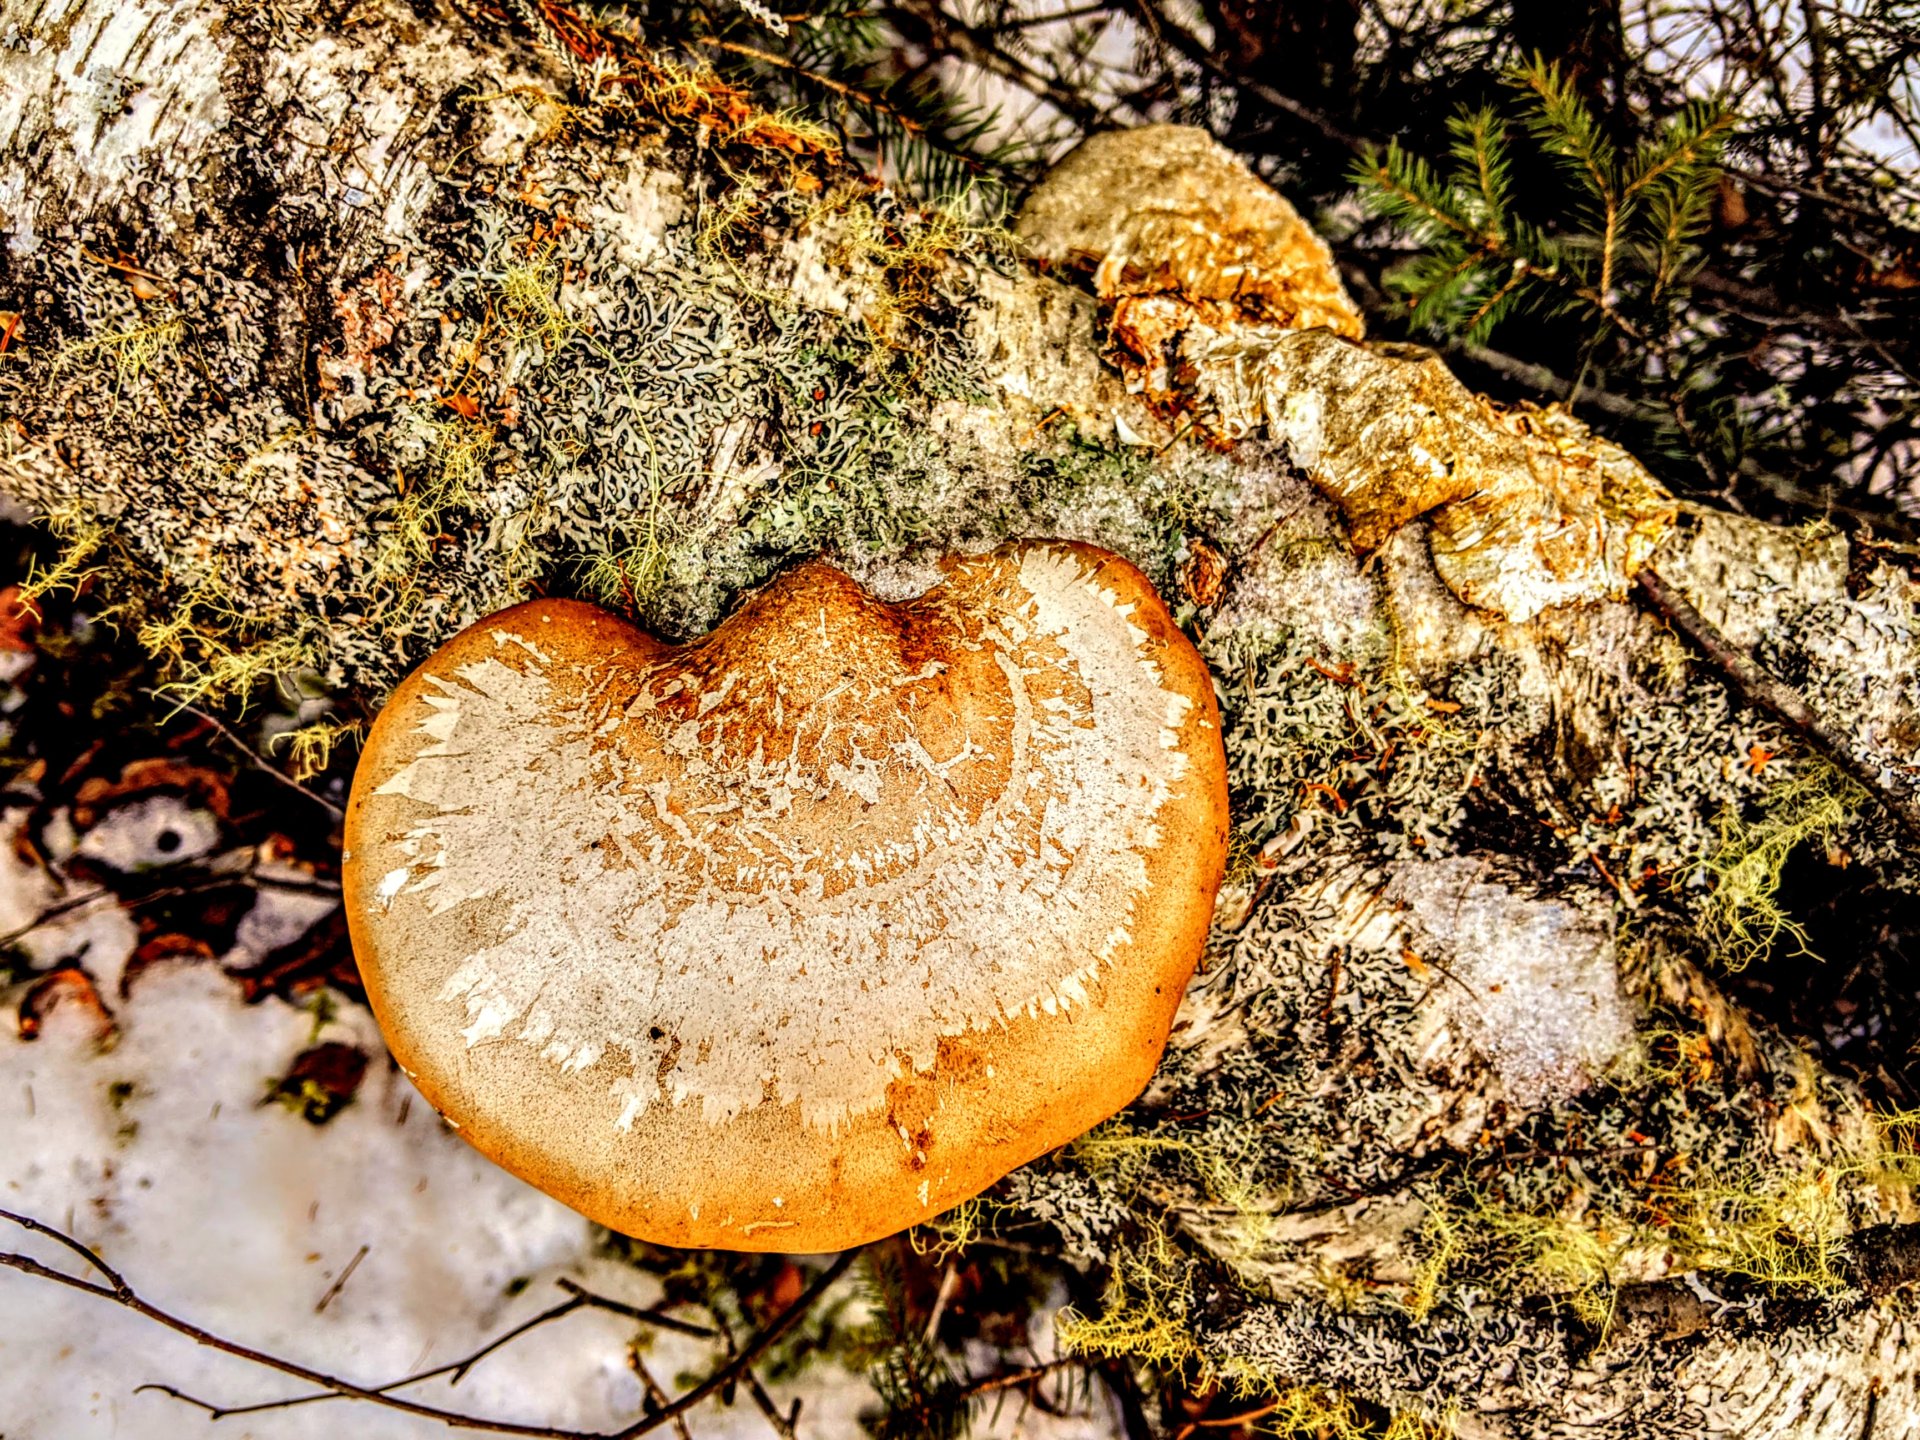 Big, brown mushroom growing on a fallen tree in downeast Maine.